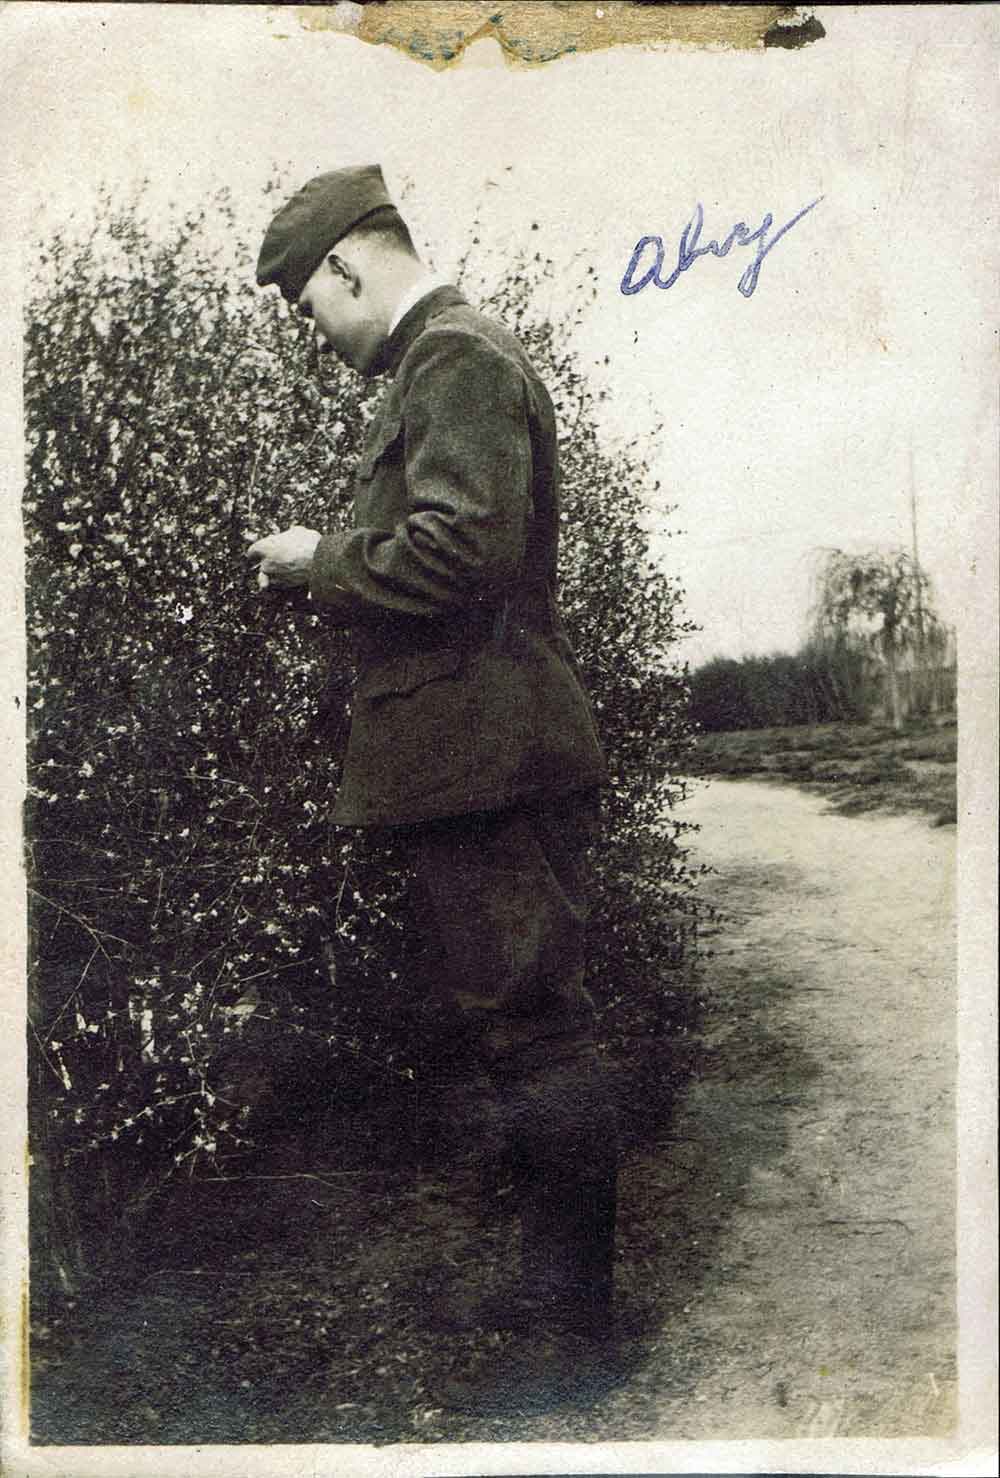 (RAC.2010.02.09) - Alvy Kline in Army Uniform, c. 1918